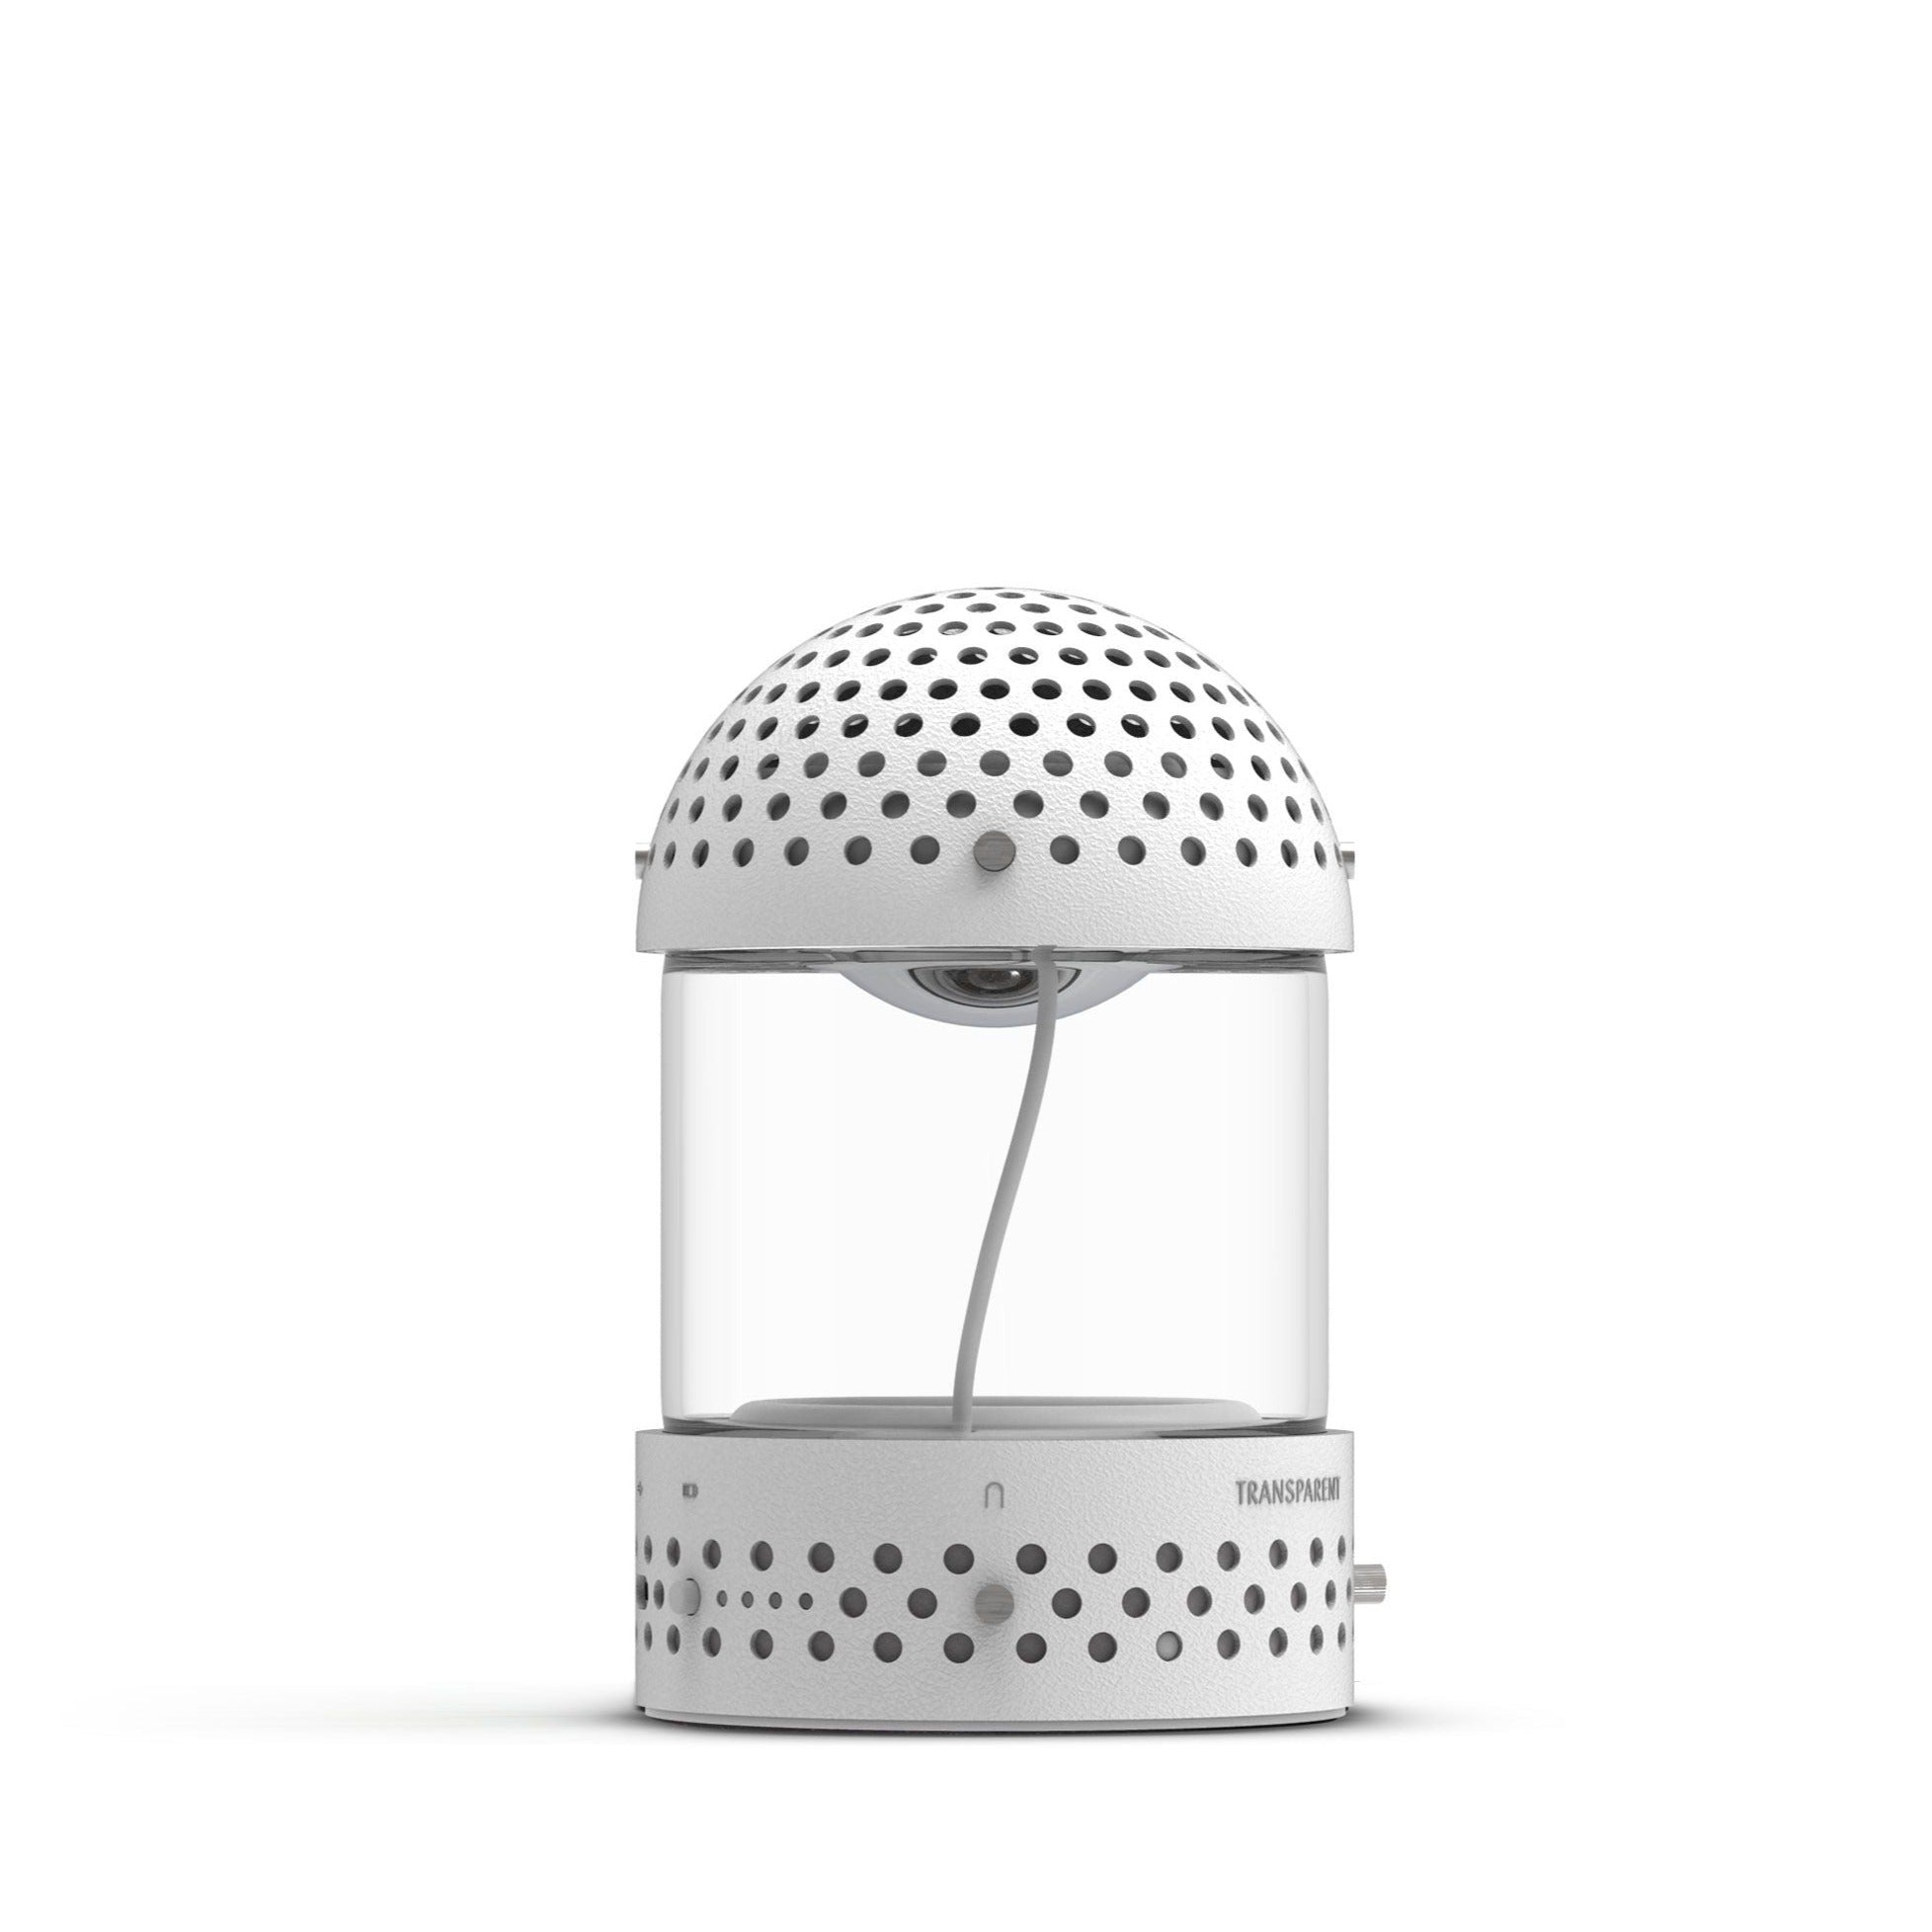 Light Speaker - White - Lautsprecher